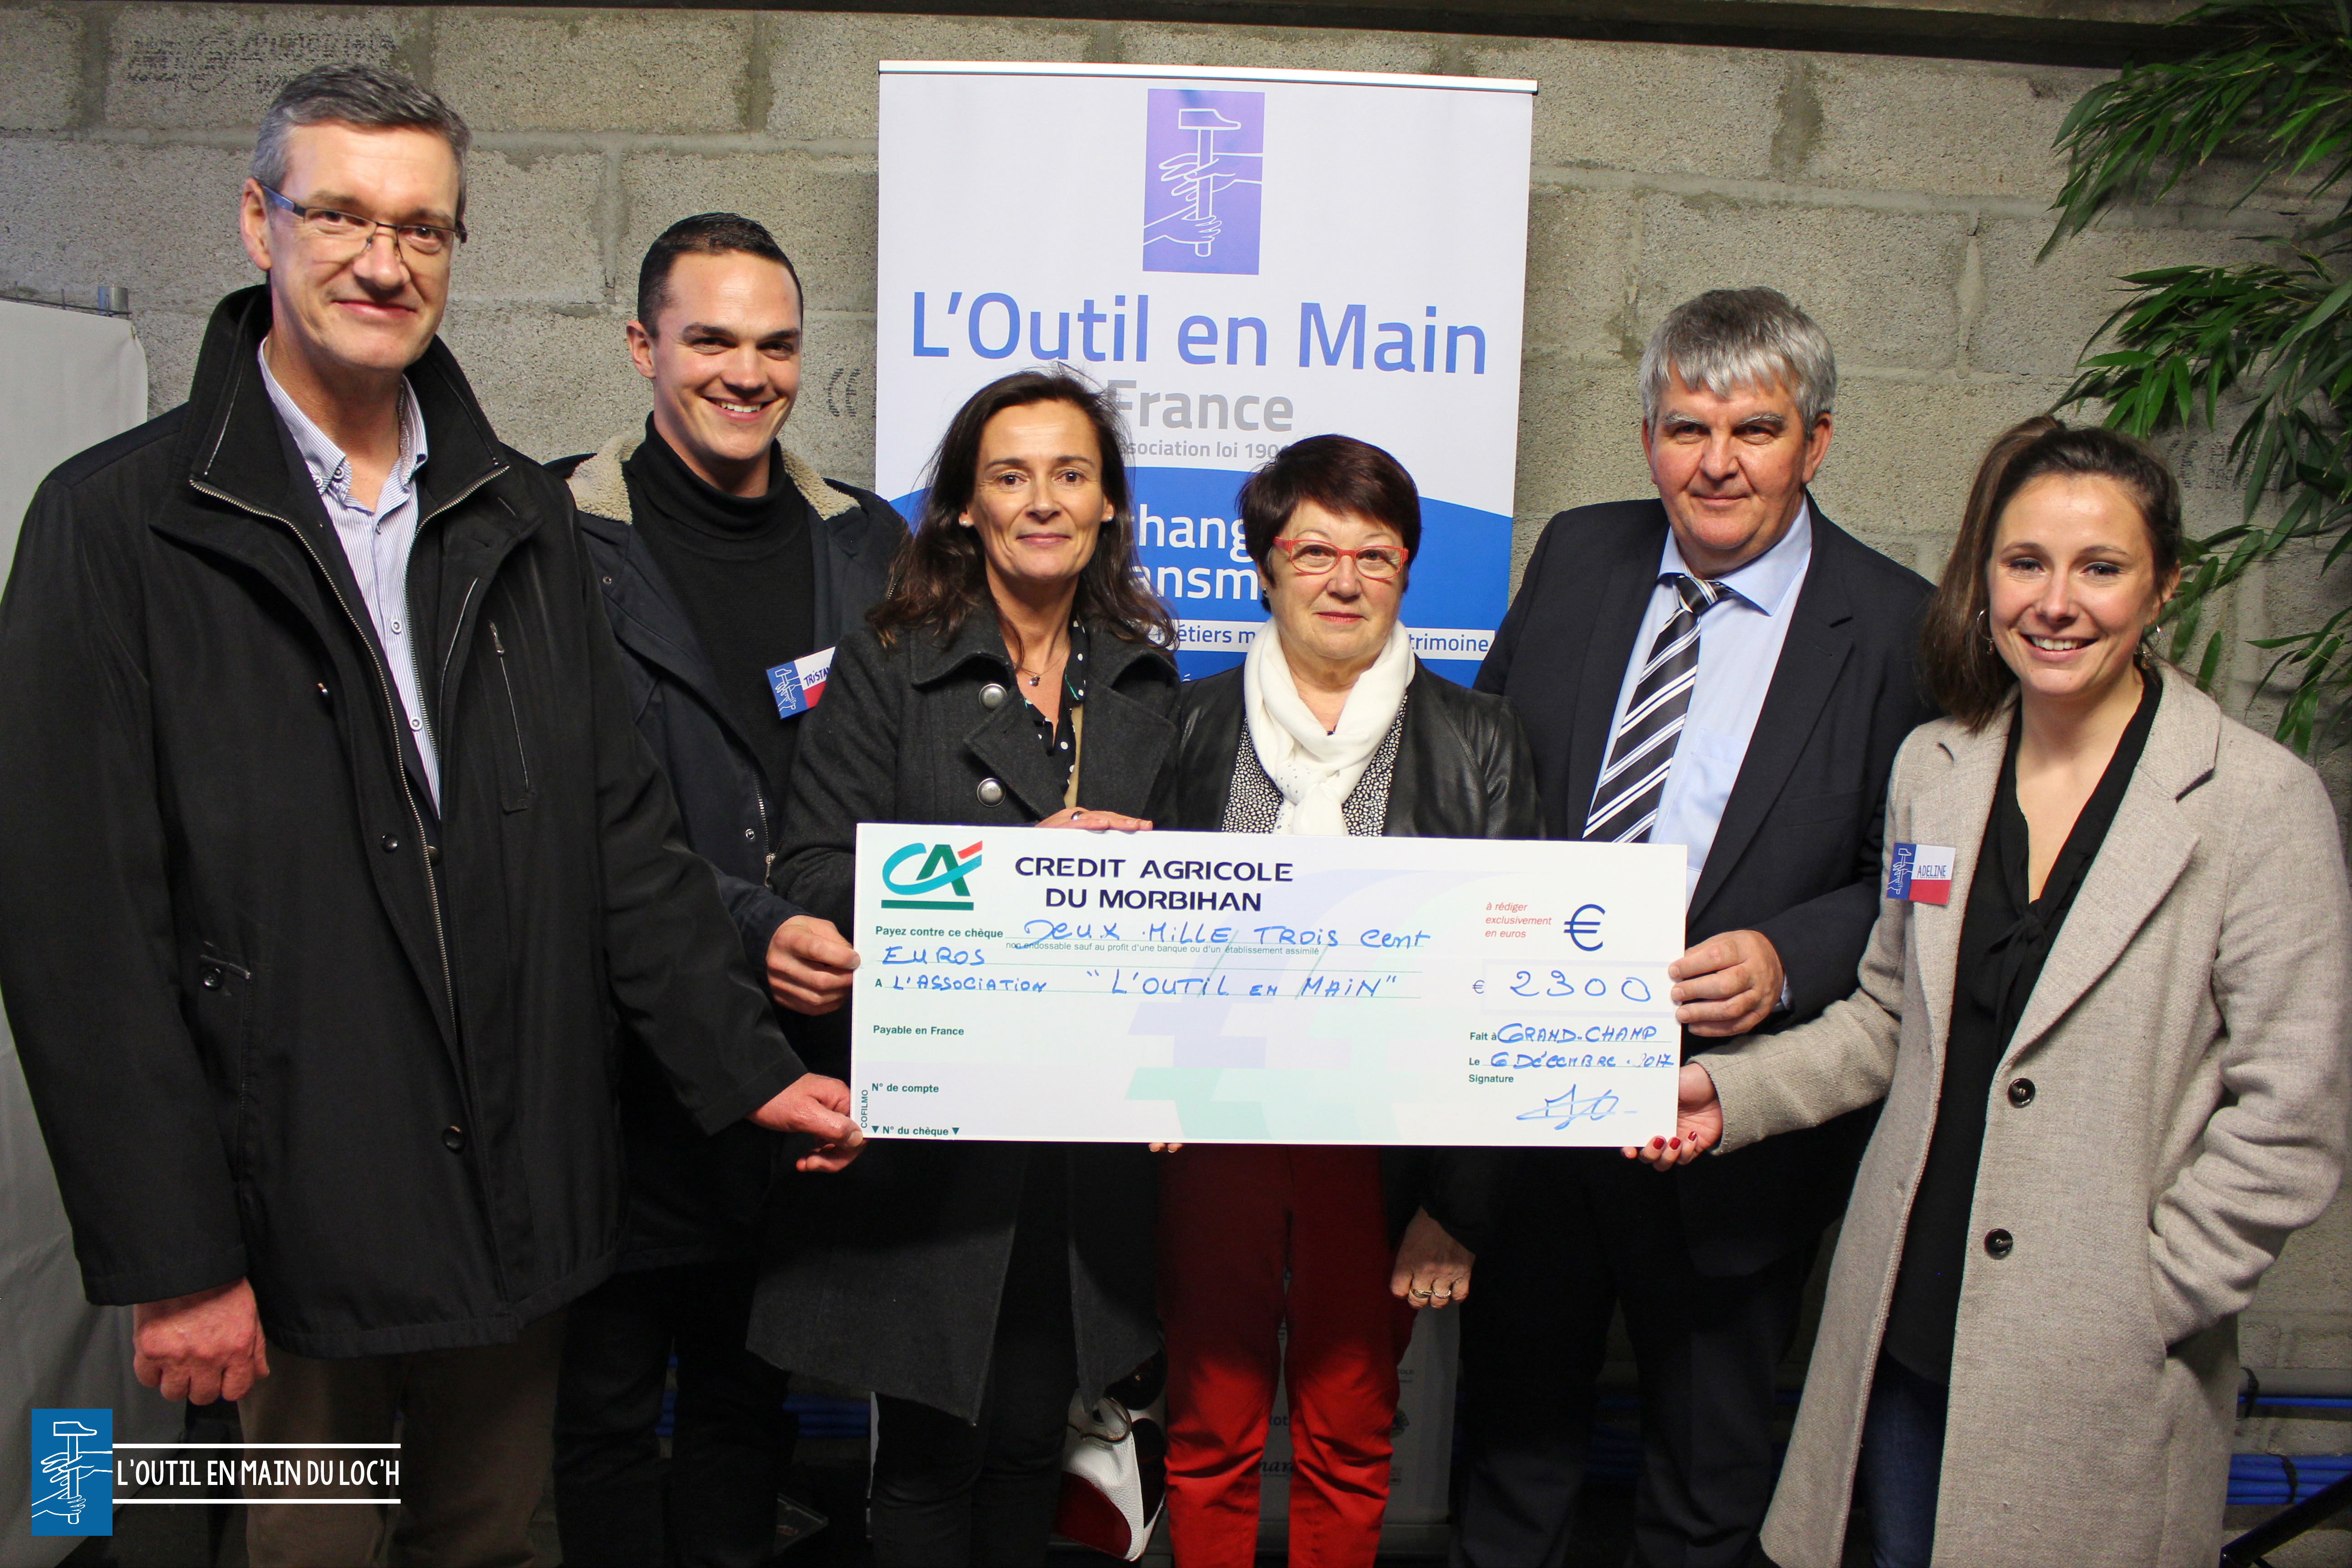 outil-en-main-loch-credit-agricole-offre-2300-euros